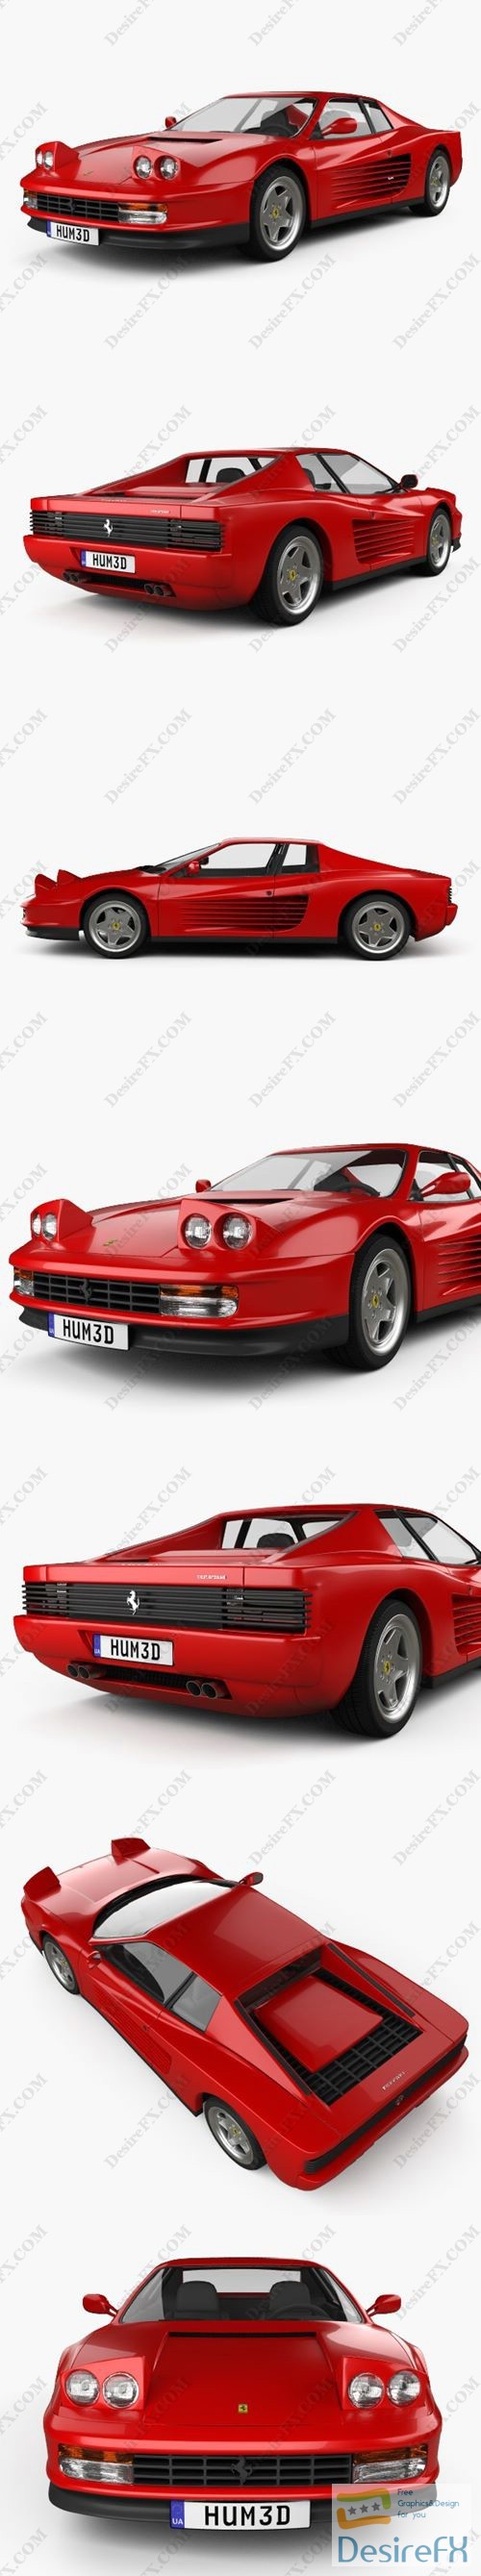 Ferrari Testarossa 1986 3D Model